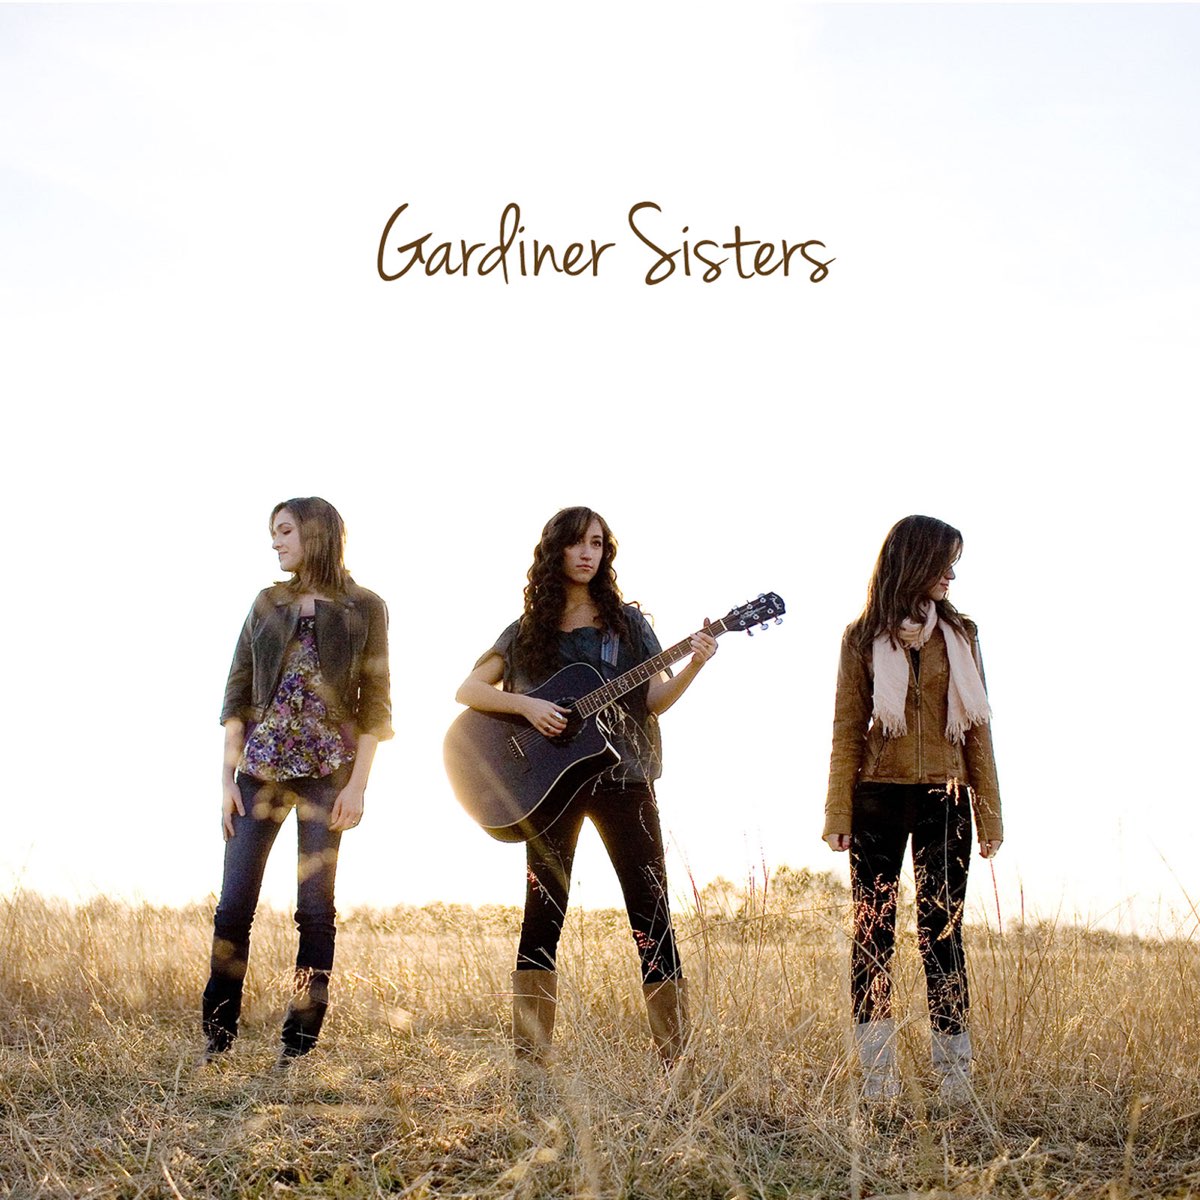 Gardiner Sisters - EP by Gardiner Sisters on Apple Music